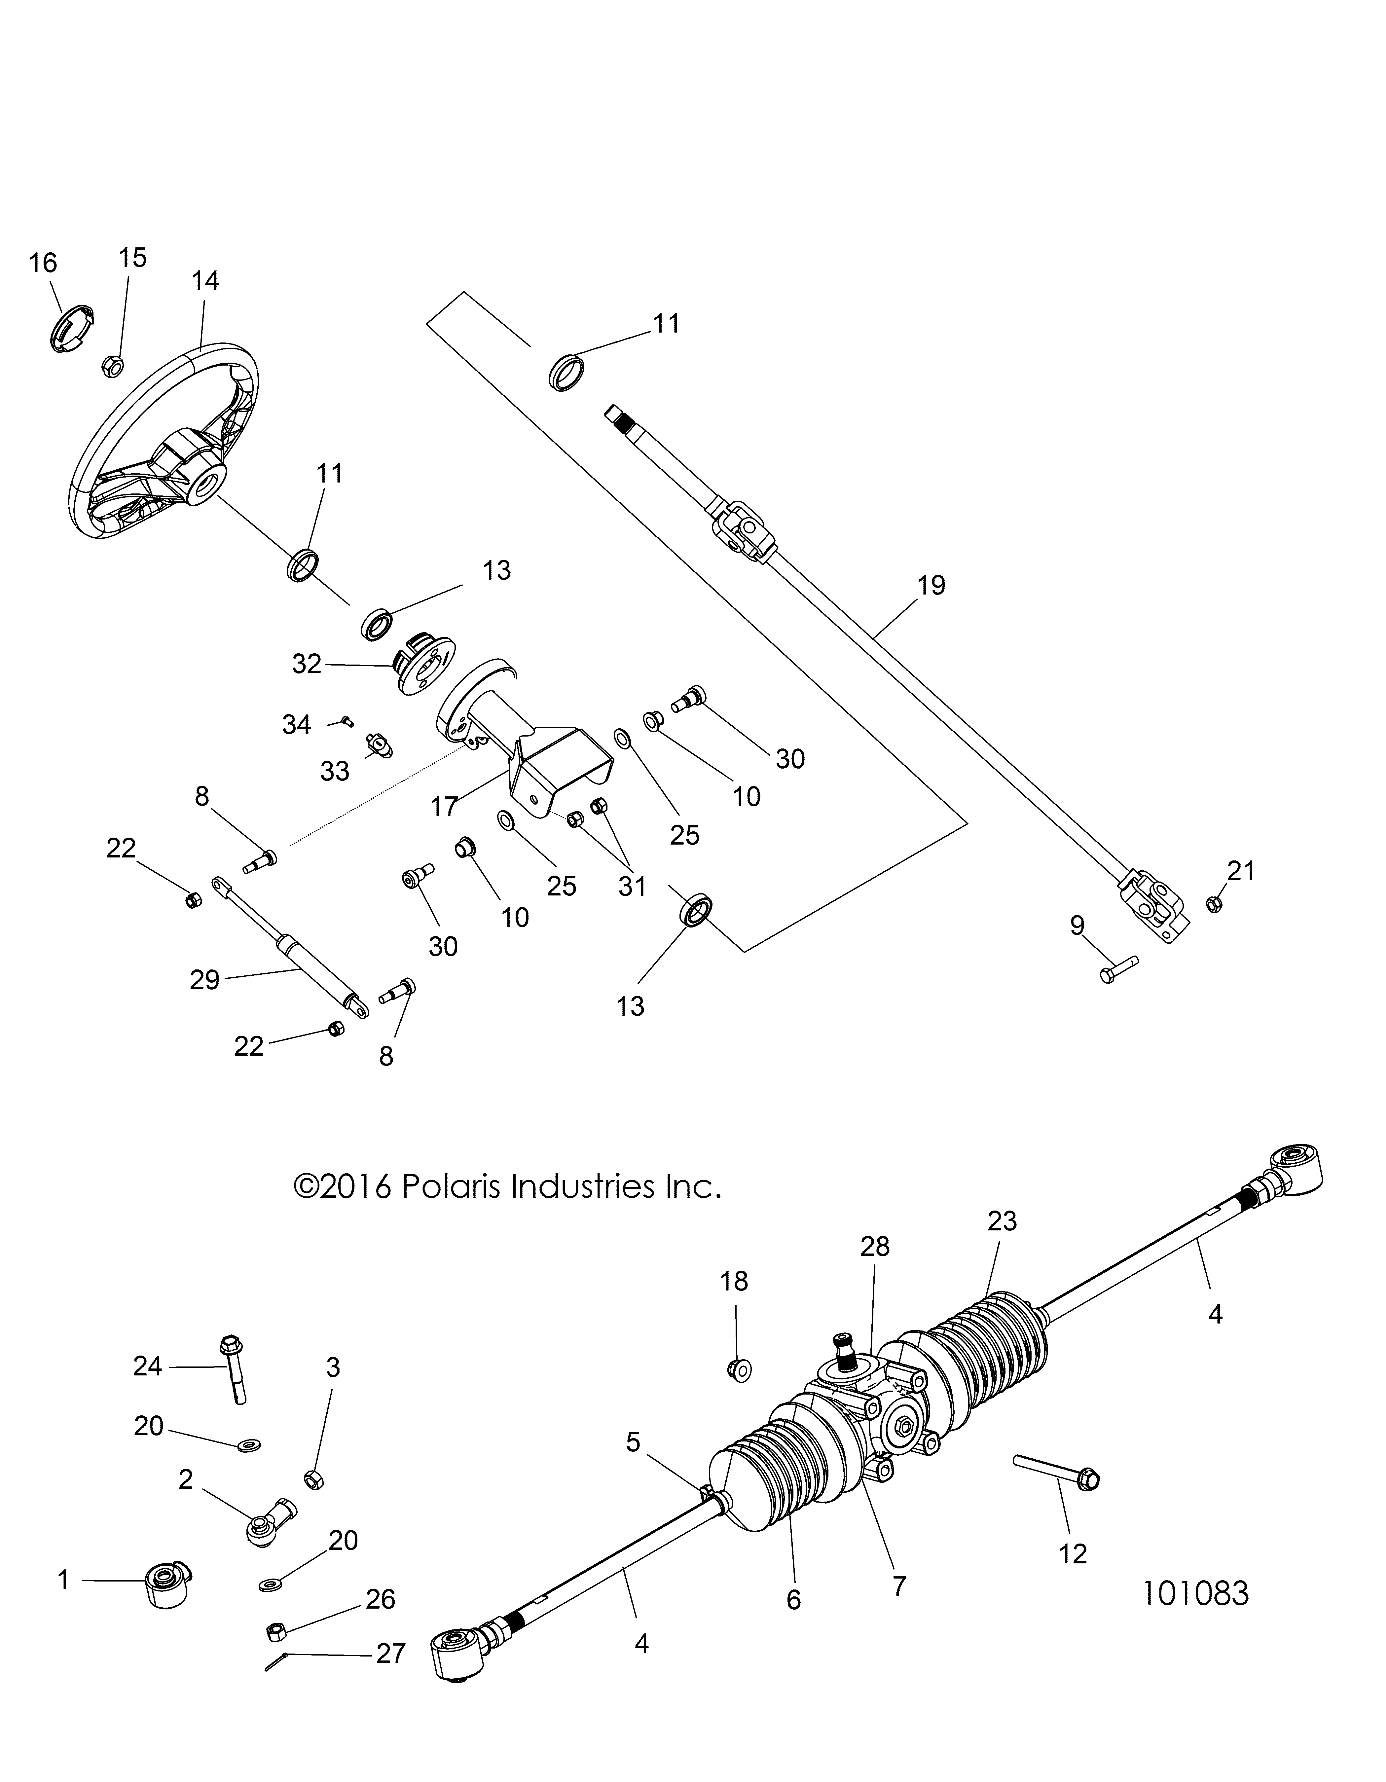 Foto diagrama Polaris que contem a peça 7061054